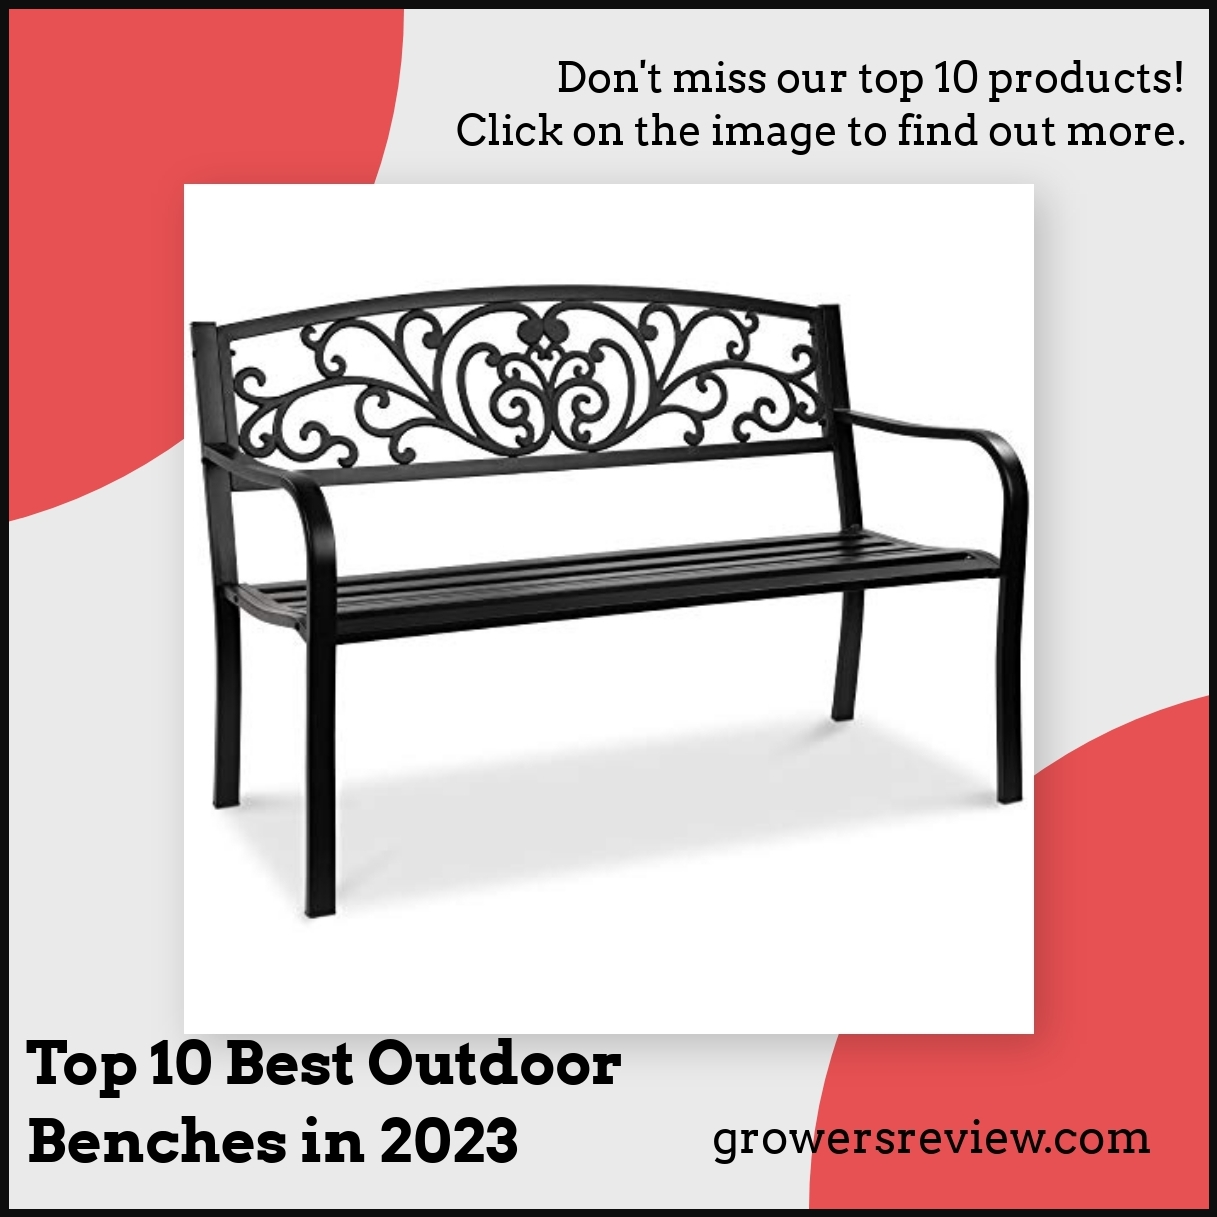 Top 10 Best Outdoor Benches in 2023